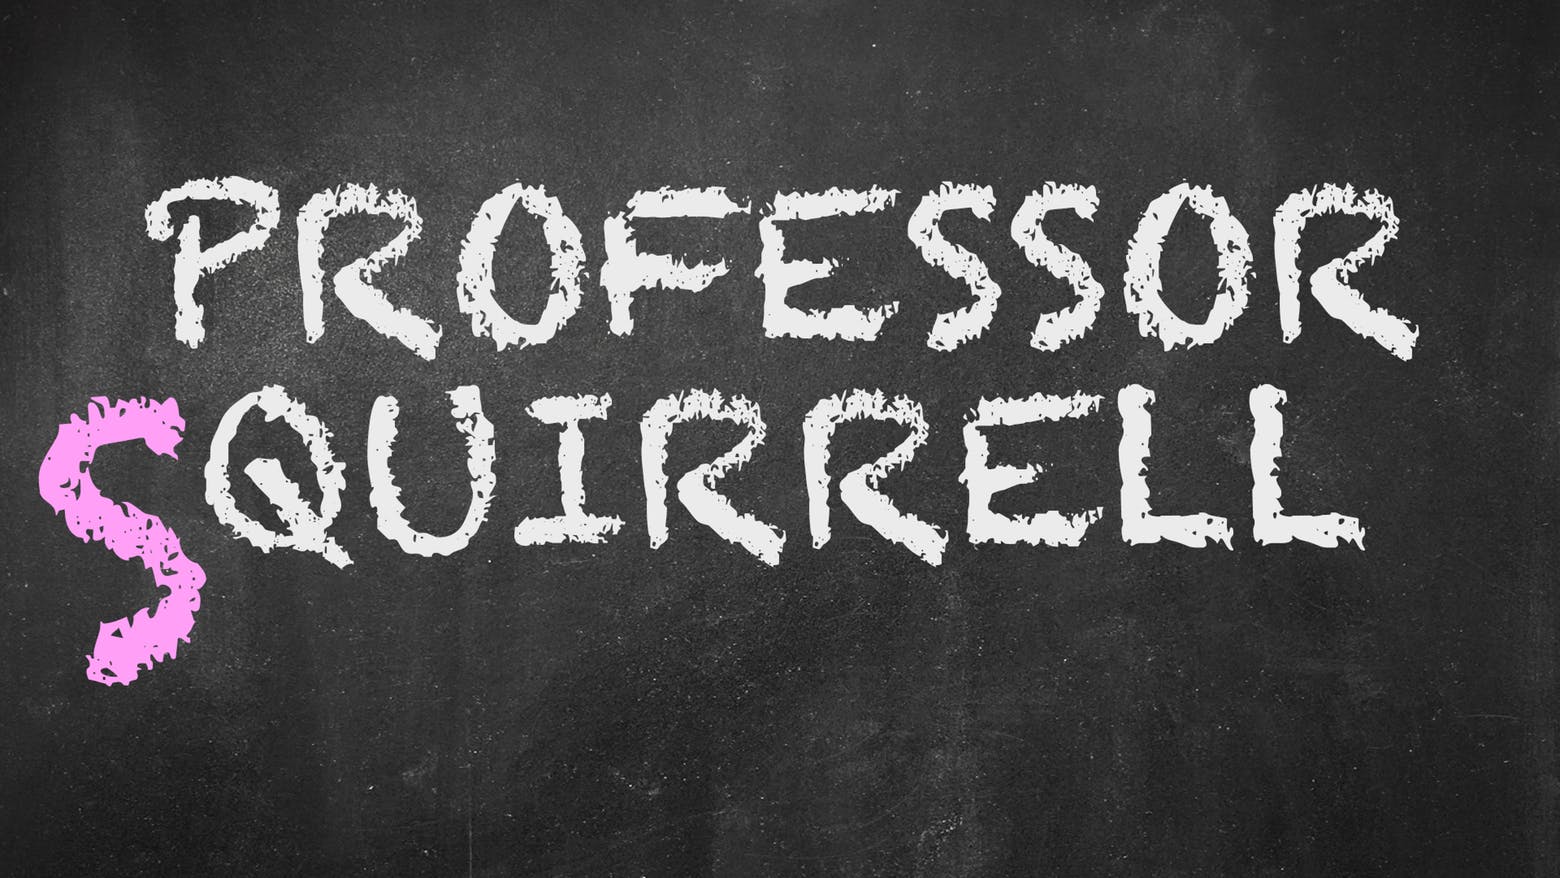 Professor Squirrel written on a chalkboard